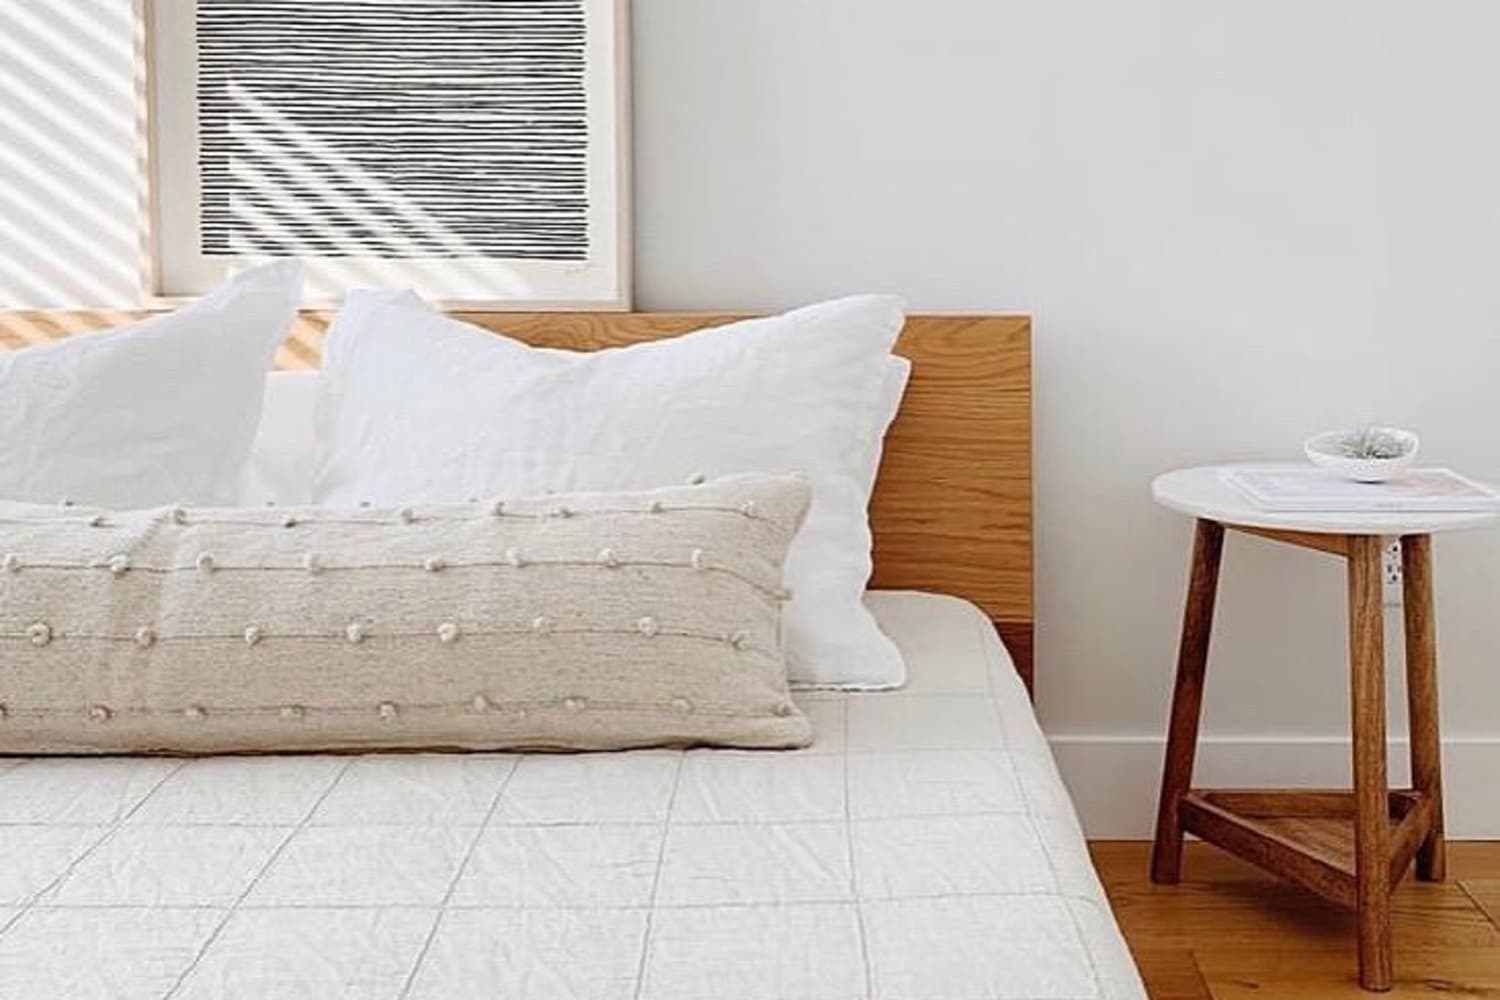 Round Up: The  Long lumbar pillow, Pillows, Home bedroom